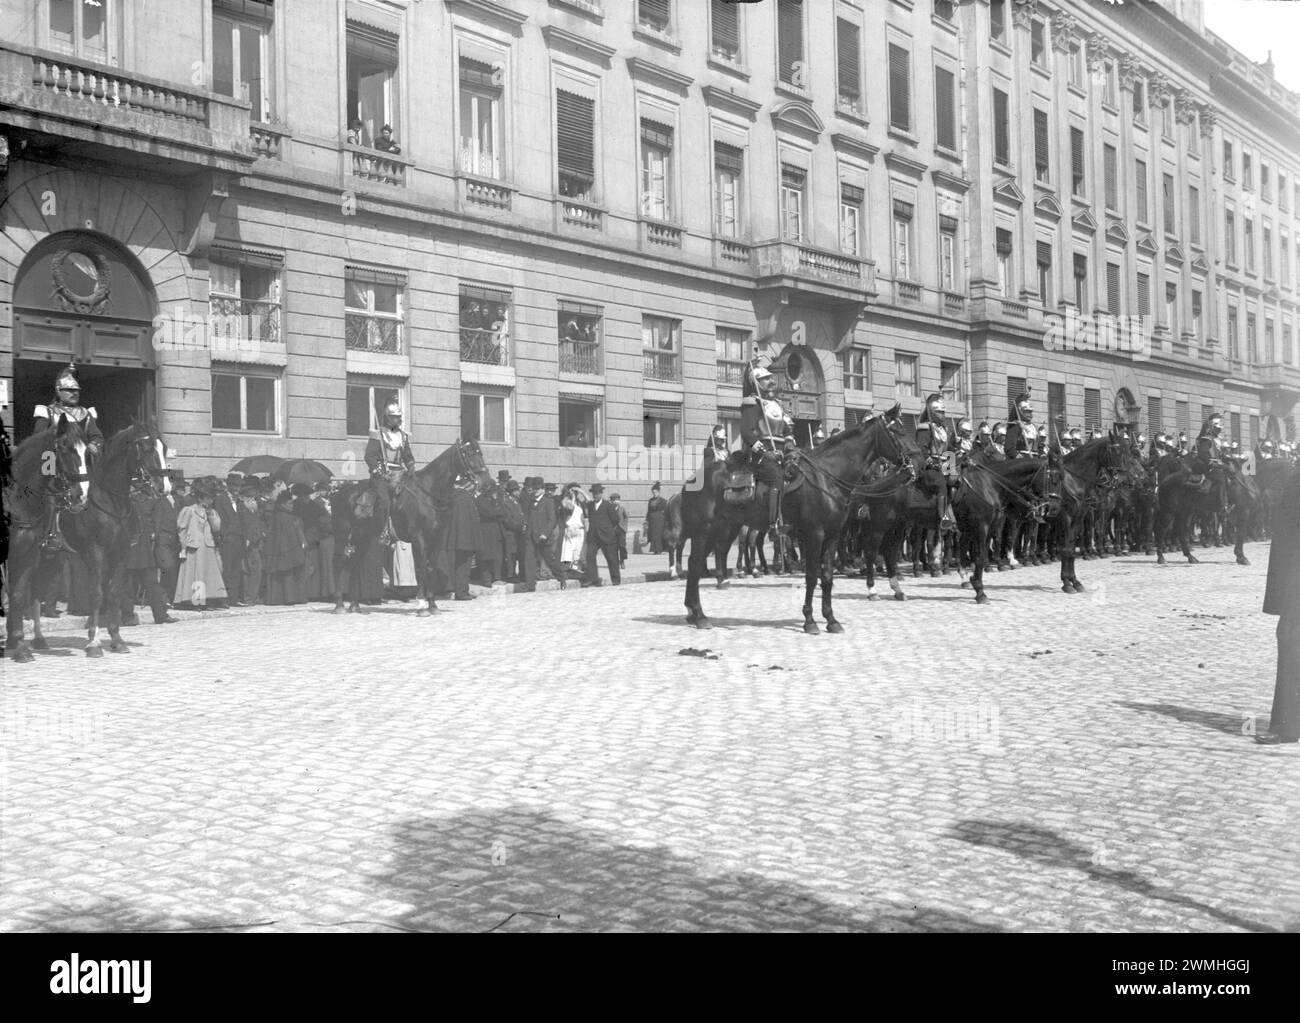 Republikanische Garde mit Pferden in einem Viertel von Lyon während einer Zeremonie. Anfang des 20. Jahrhunderts. Altes Foto Wiederhergestellt. Stockfoto